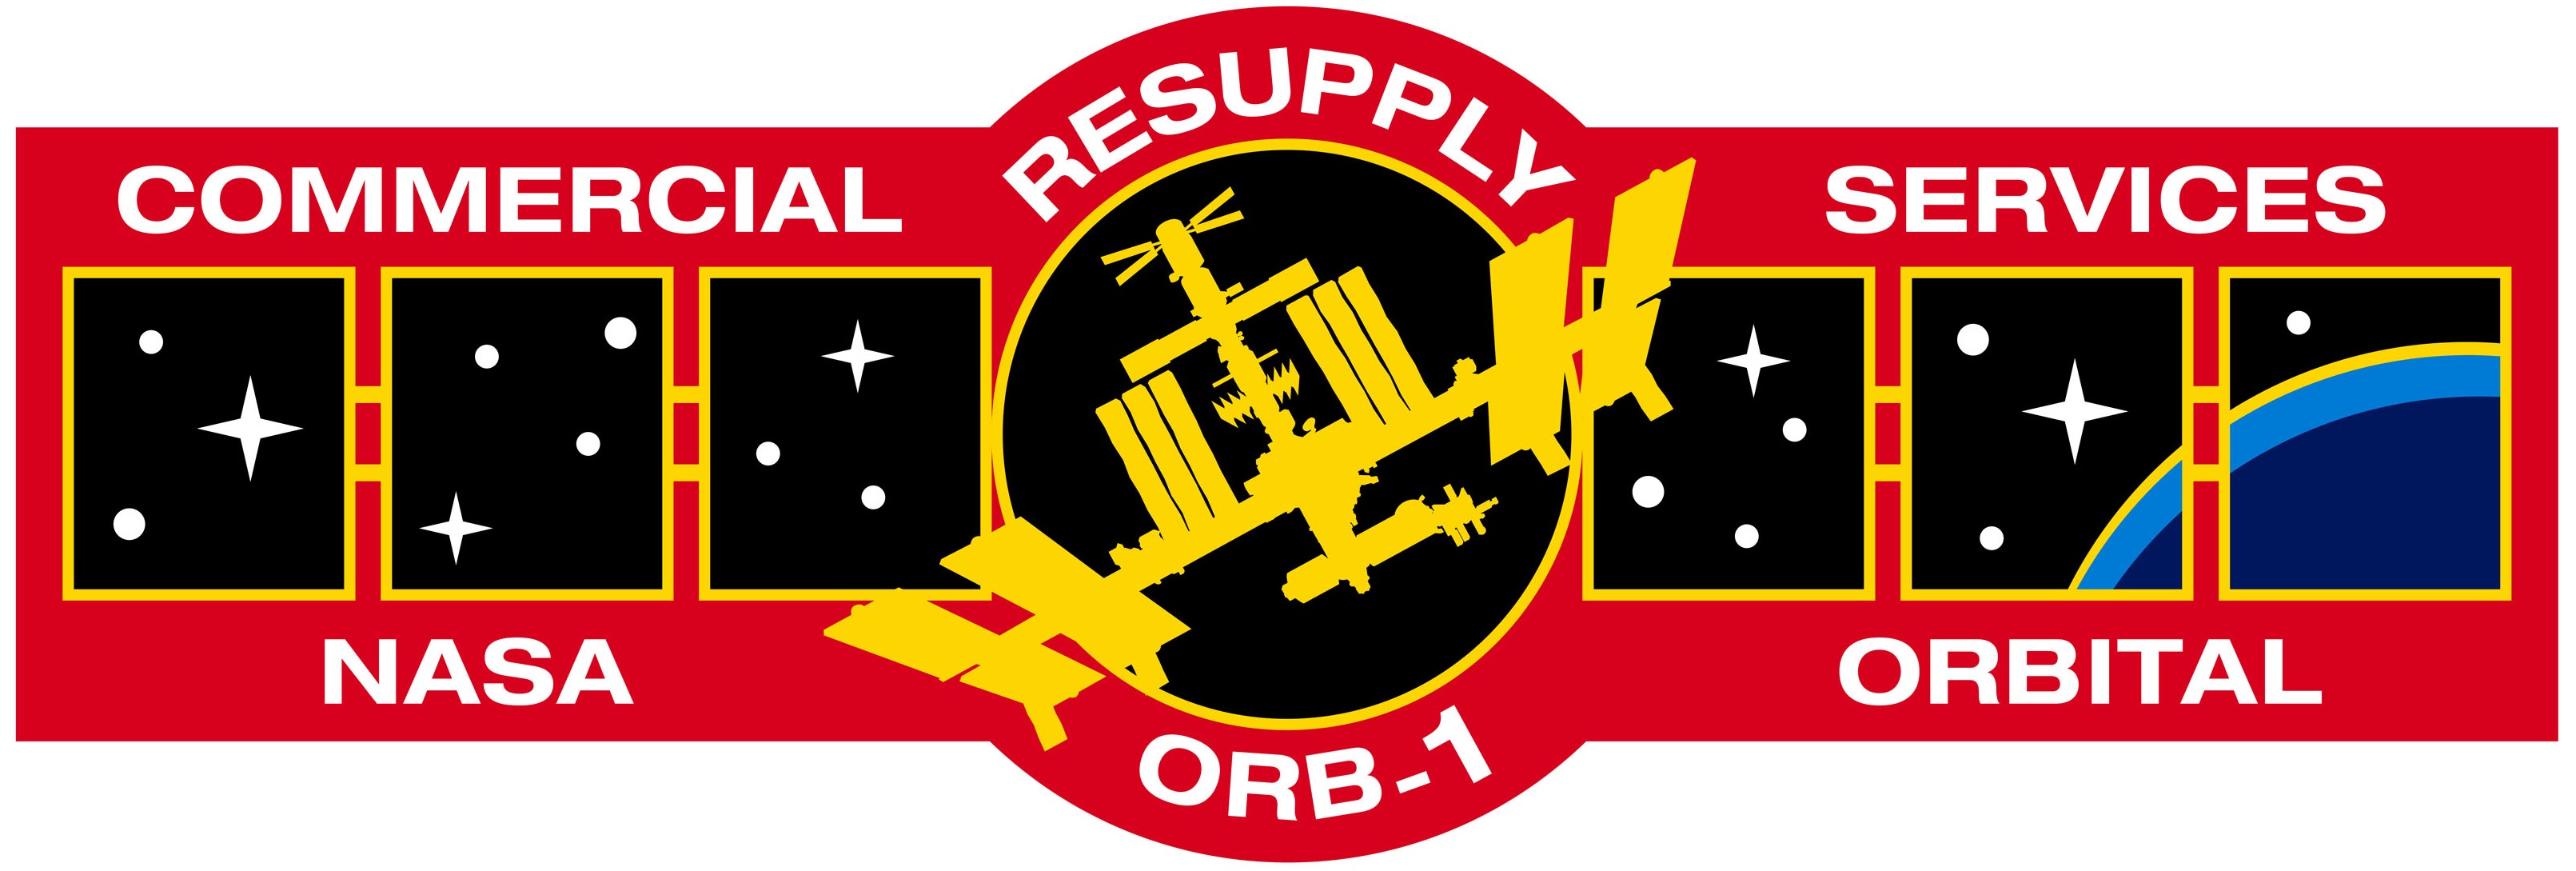 Parche de misión para la primera misión operativa de reabastecimiento de carga de Orbital a la estación espacial